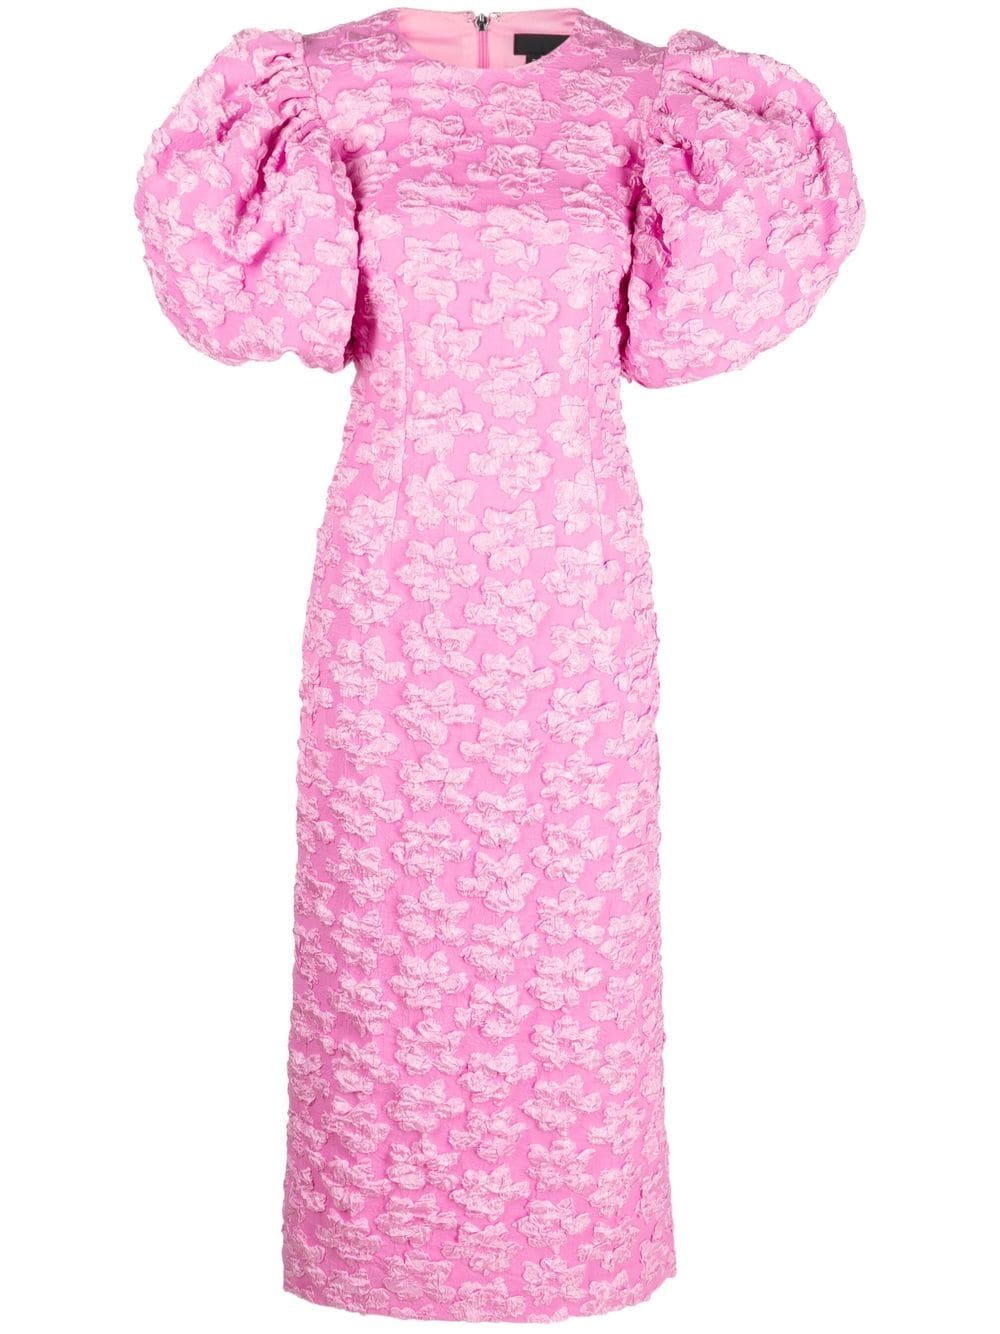 お得大得価ROTATE puff sleeve pink floral dress UK8 ワンピース